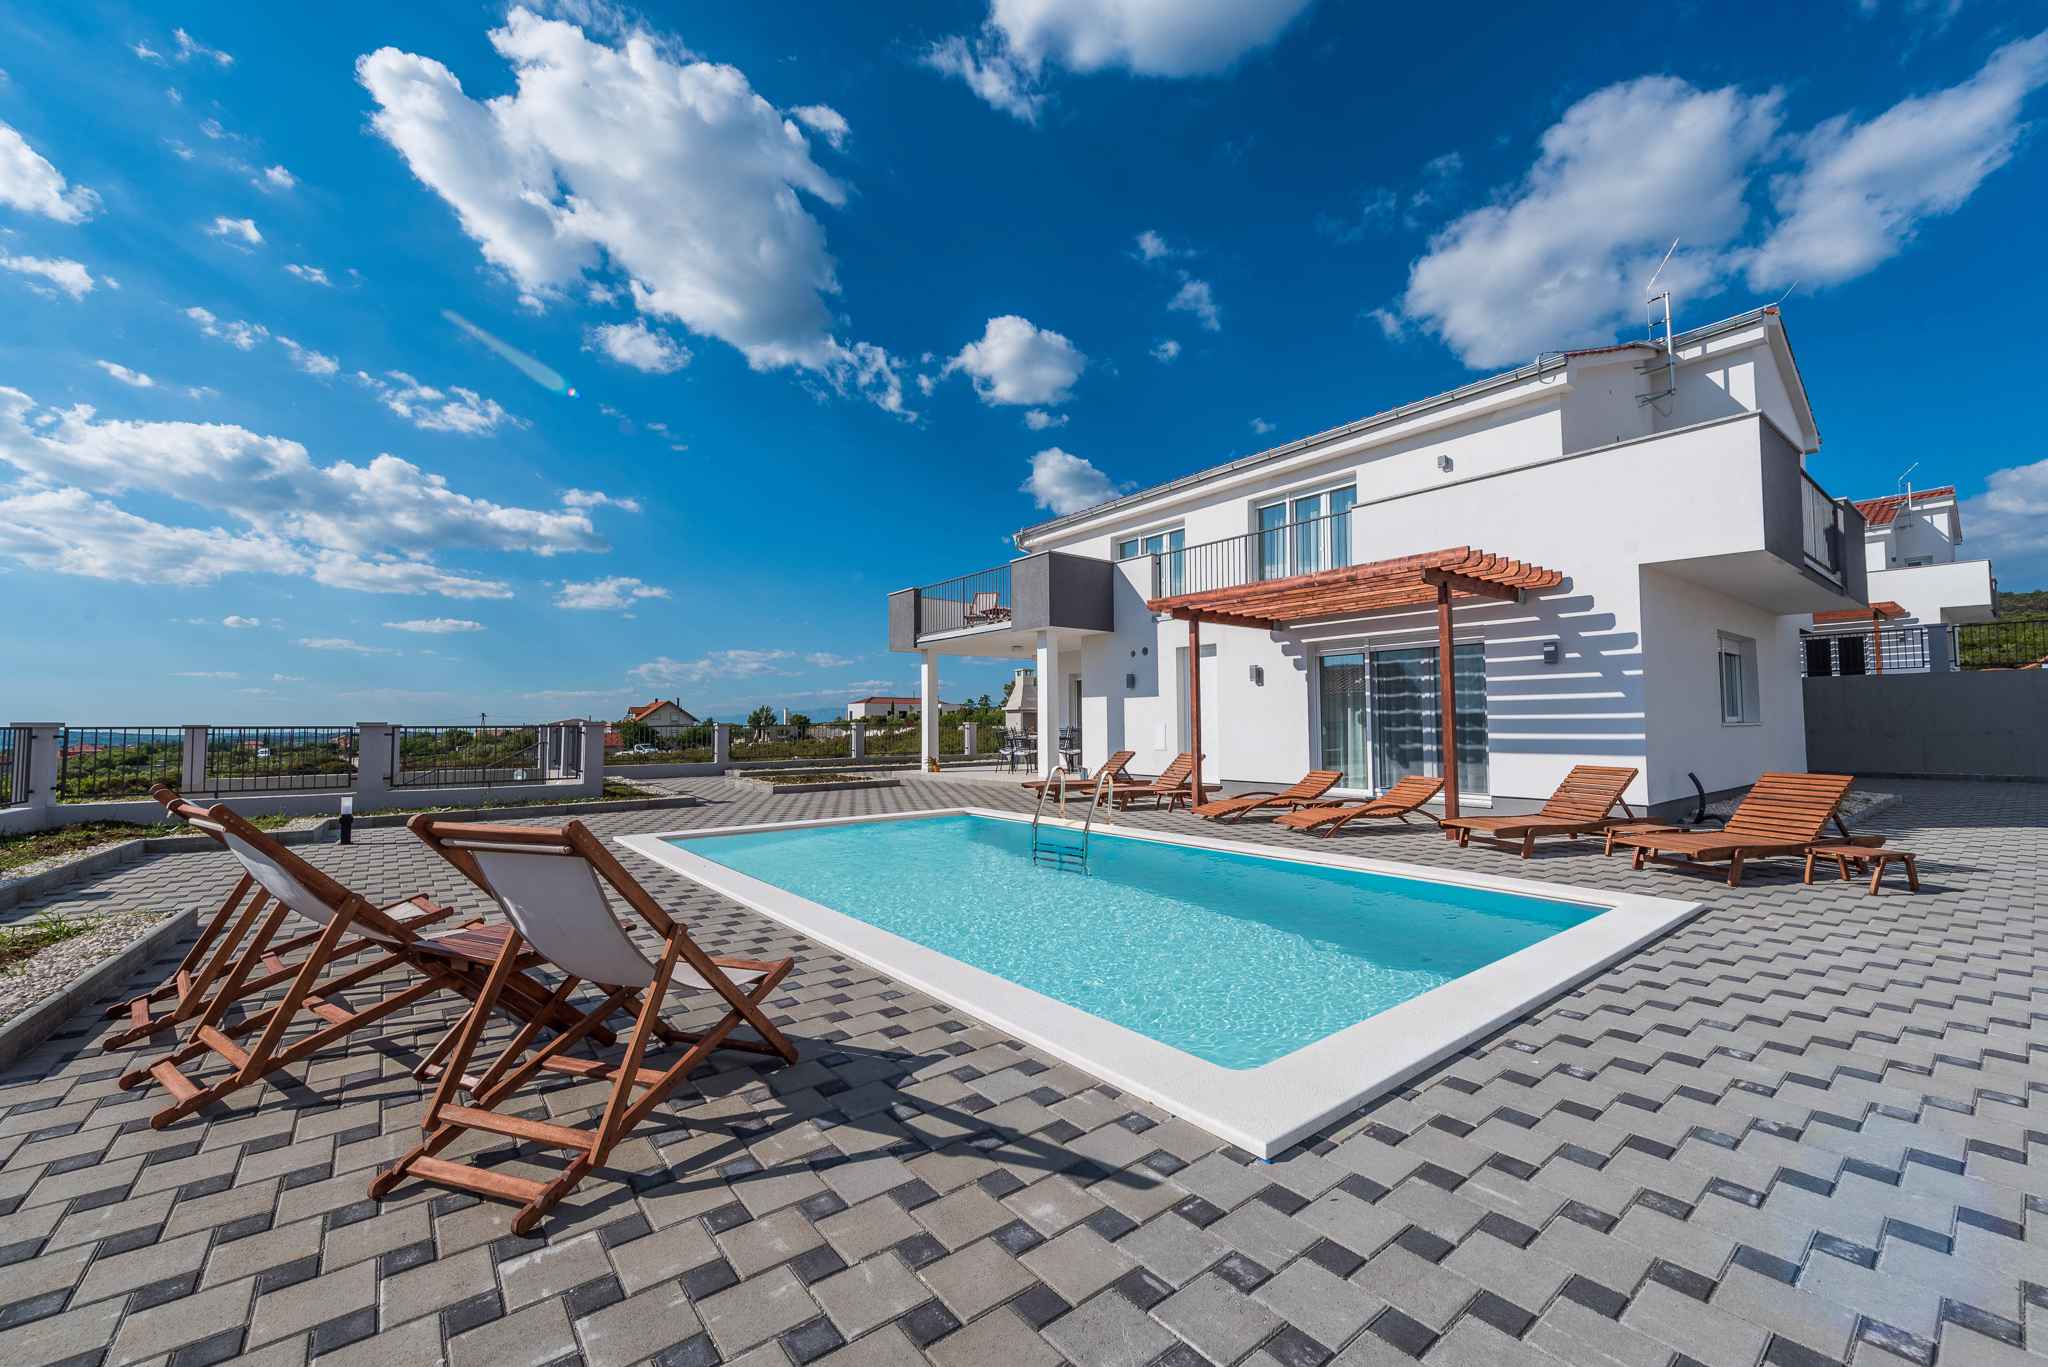 Villa mit Pool und Klimaanlage Ferienhaus in Dalmatien